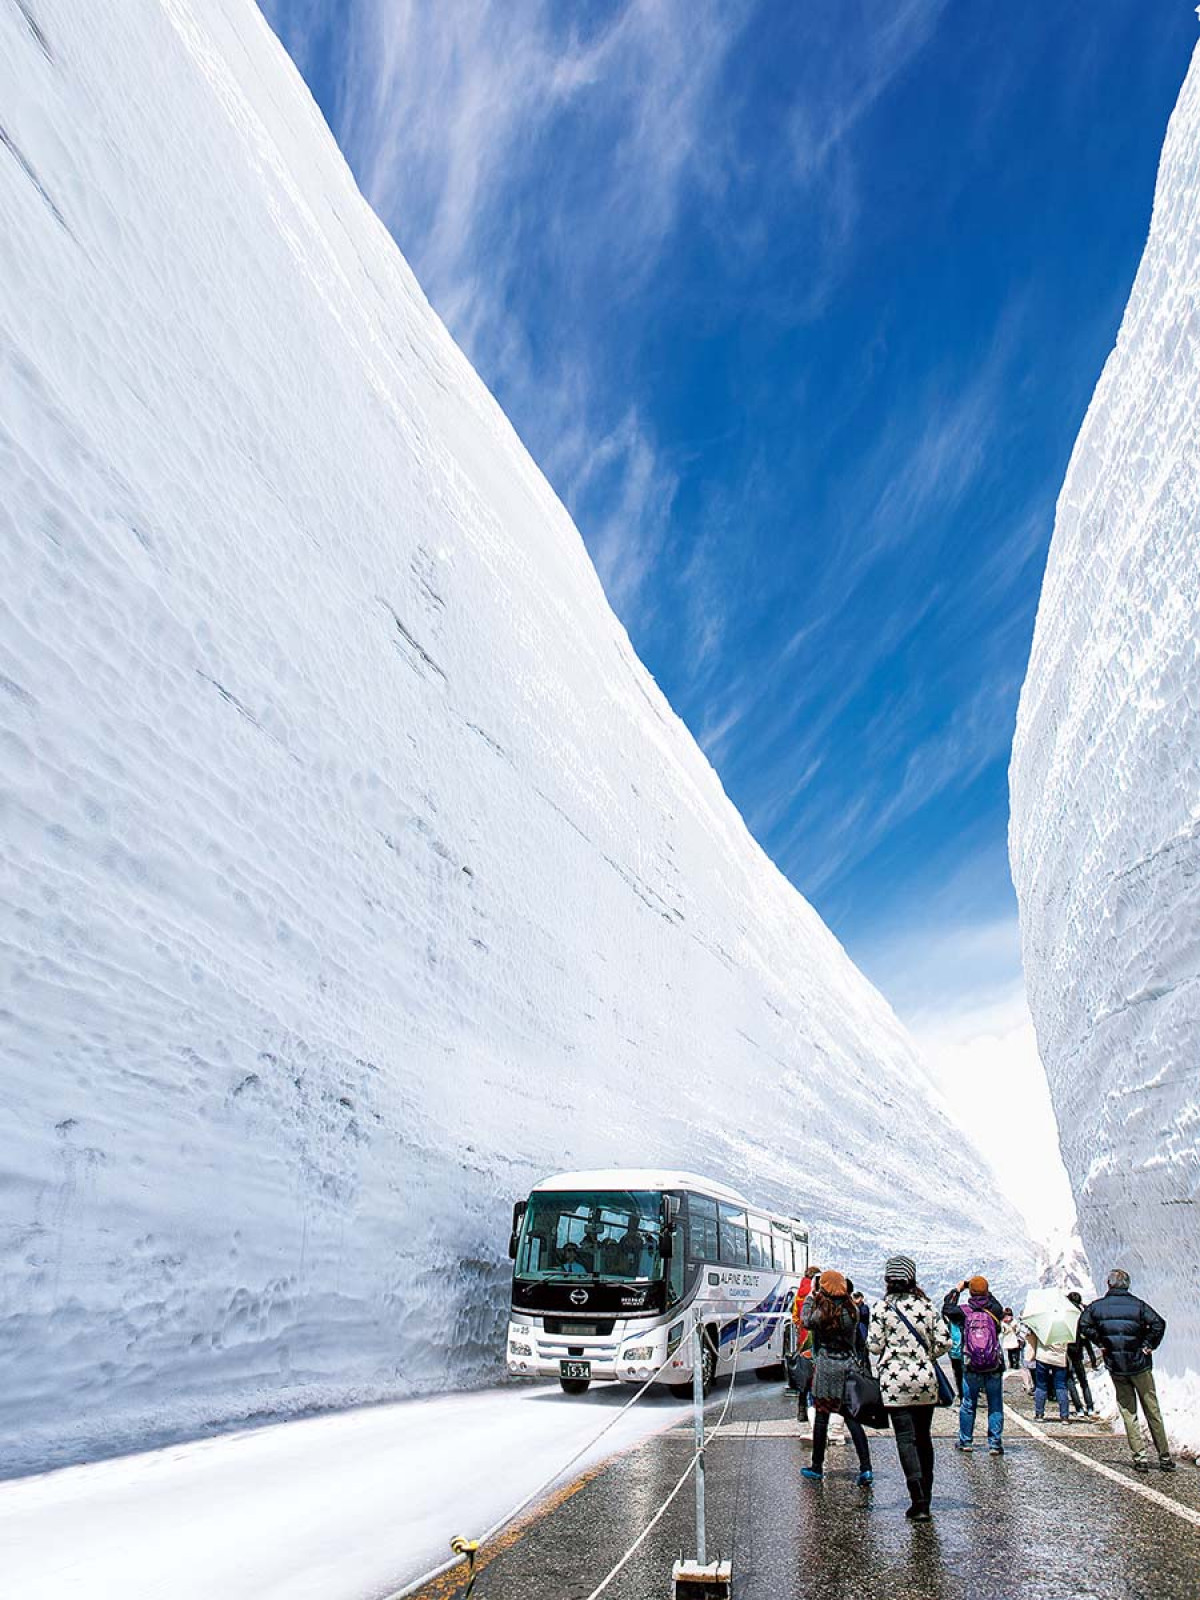 立山黒部アルペンルートが4月15日より 雪の大谷フェスティバル を開催 恒例の 高さ予想キャンペーン も実施 ヤマケイオンライン 山と溪谷社